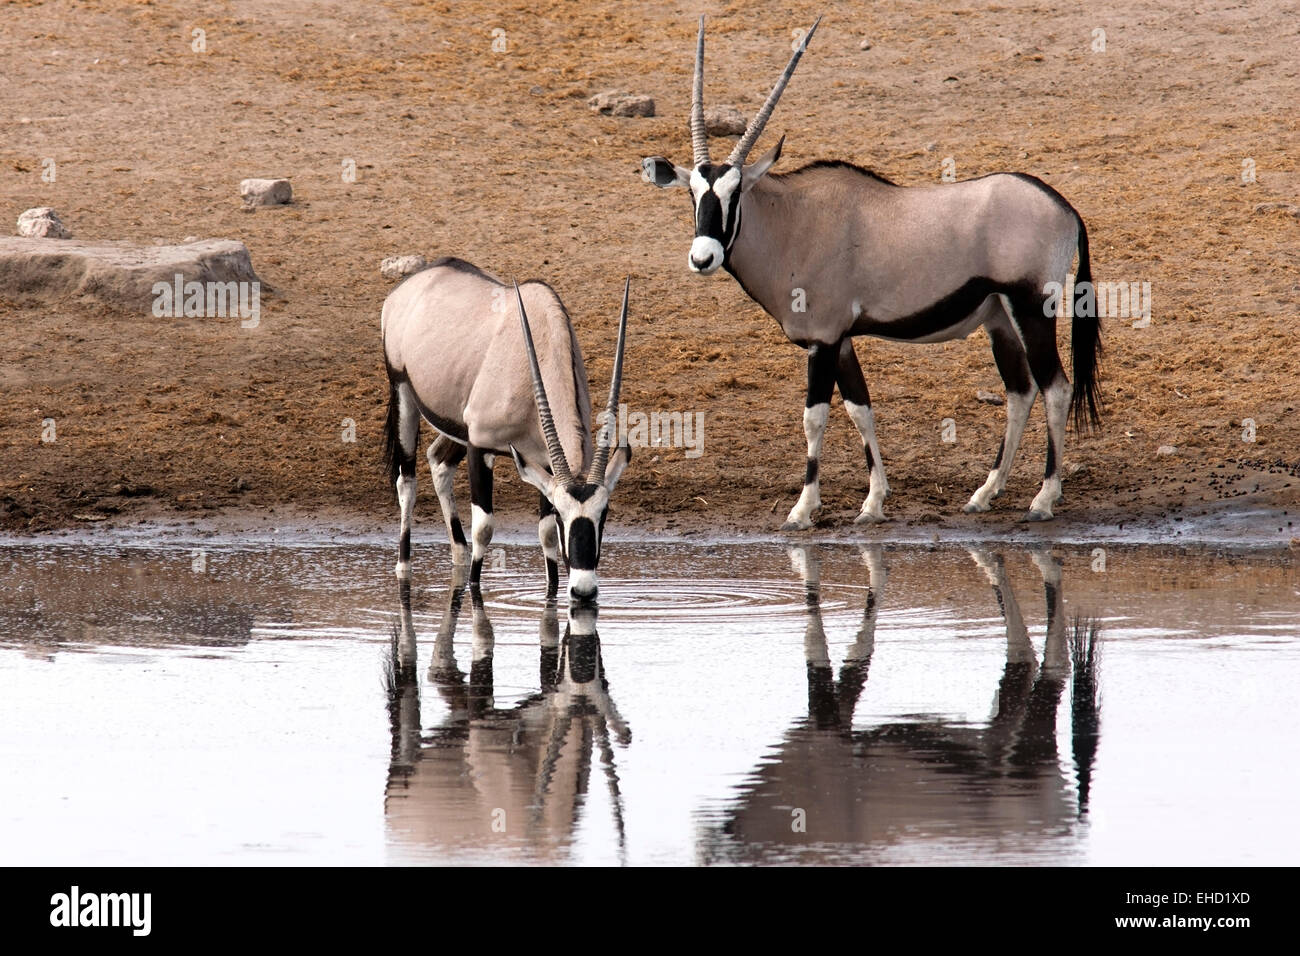 Gemsbock oder Oryx (Oryx Gazella) - Chudob Wasserloch-Etosha Nationalpark - Namibia, Afrika Stockfoto